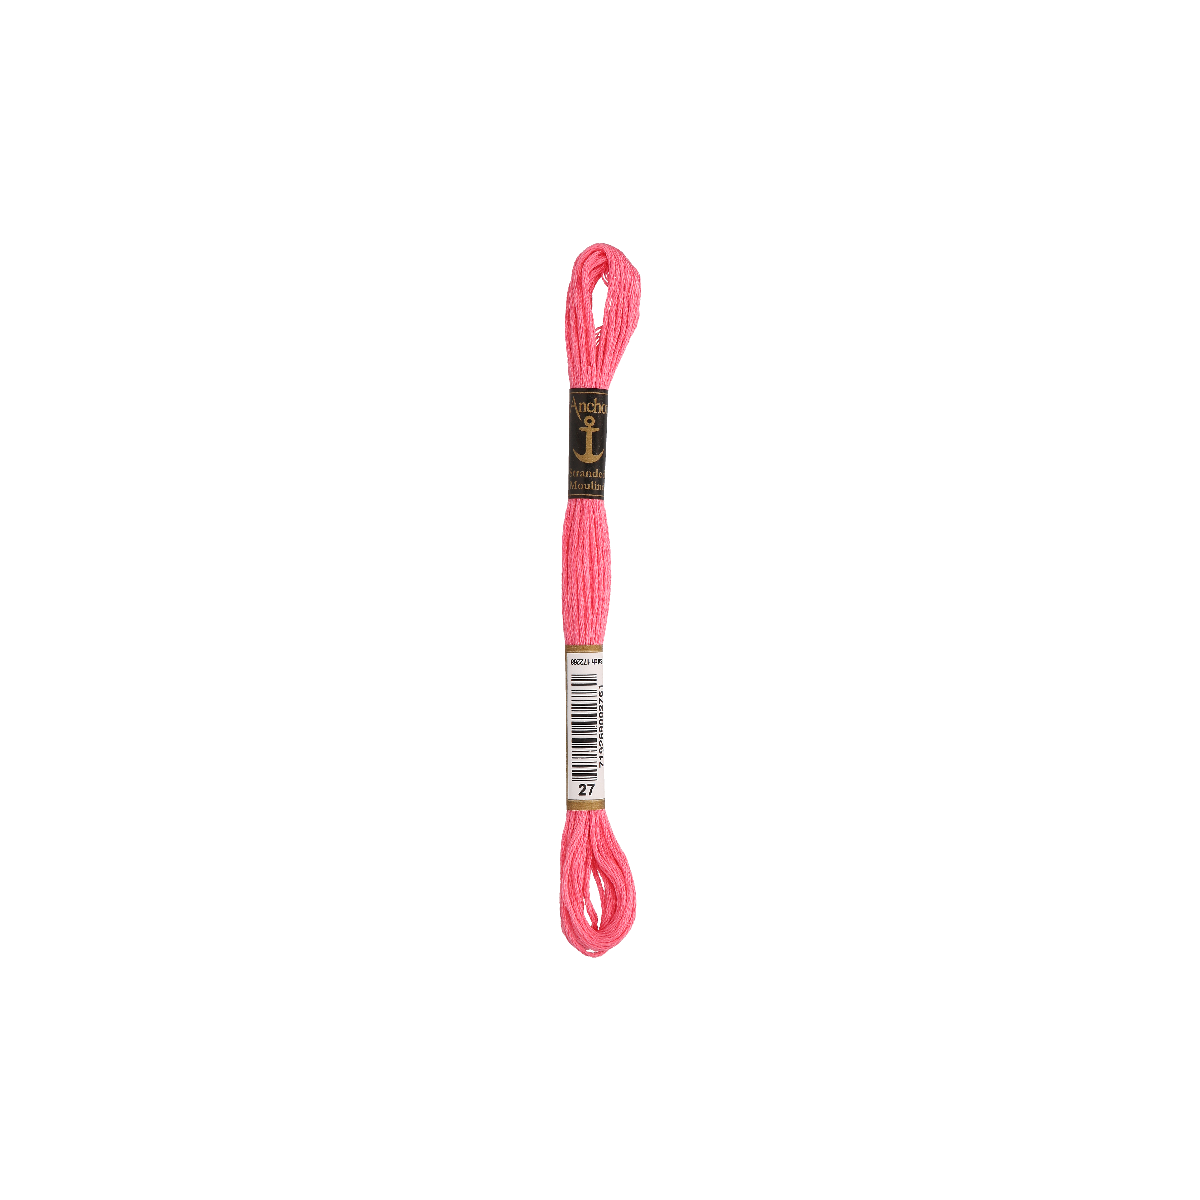 Anchor Sticktwist 8m, rosa, Baumwolle, Farbe 27,...